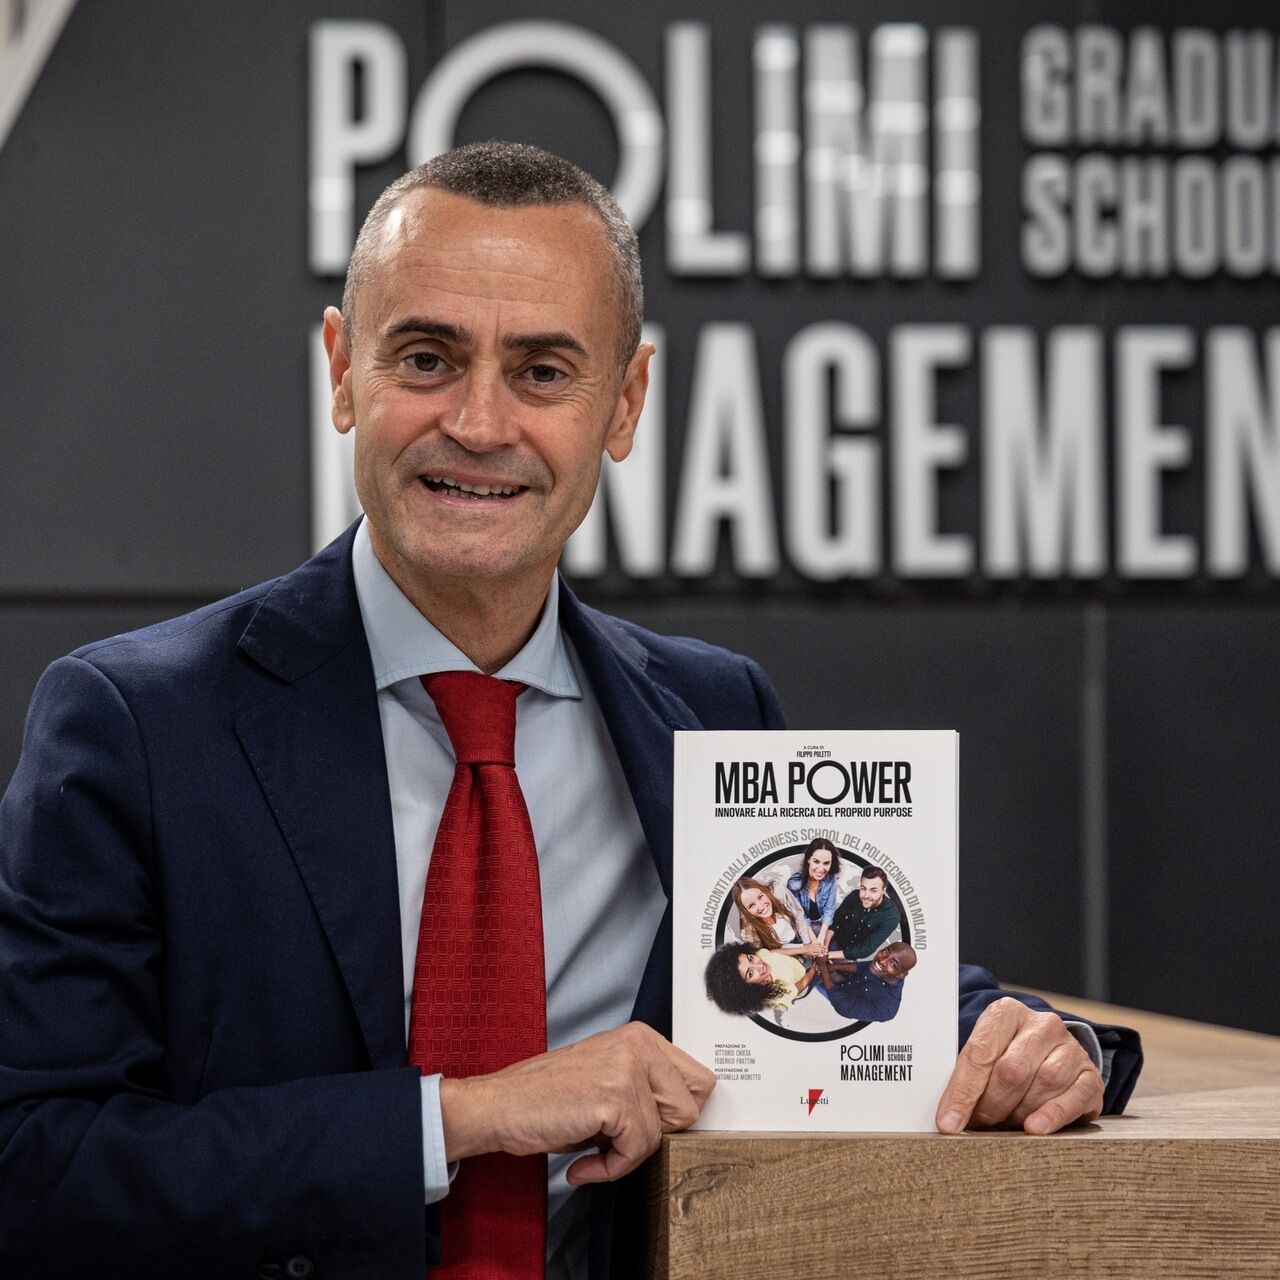 MBA Power: poklicni novinar Filippo Poletti je avtor knjige »MBA Power: innovating in search of one's goal«: pripoveduje zgodbe 101 menedžerjev, starih od trideset do šestdeset let, ki so se med pandemijo vrnili k študiju in učenju.